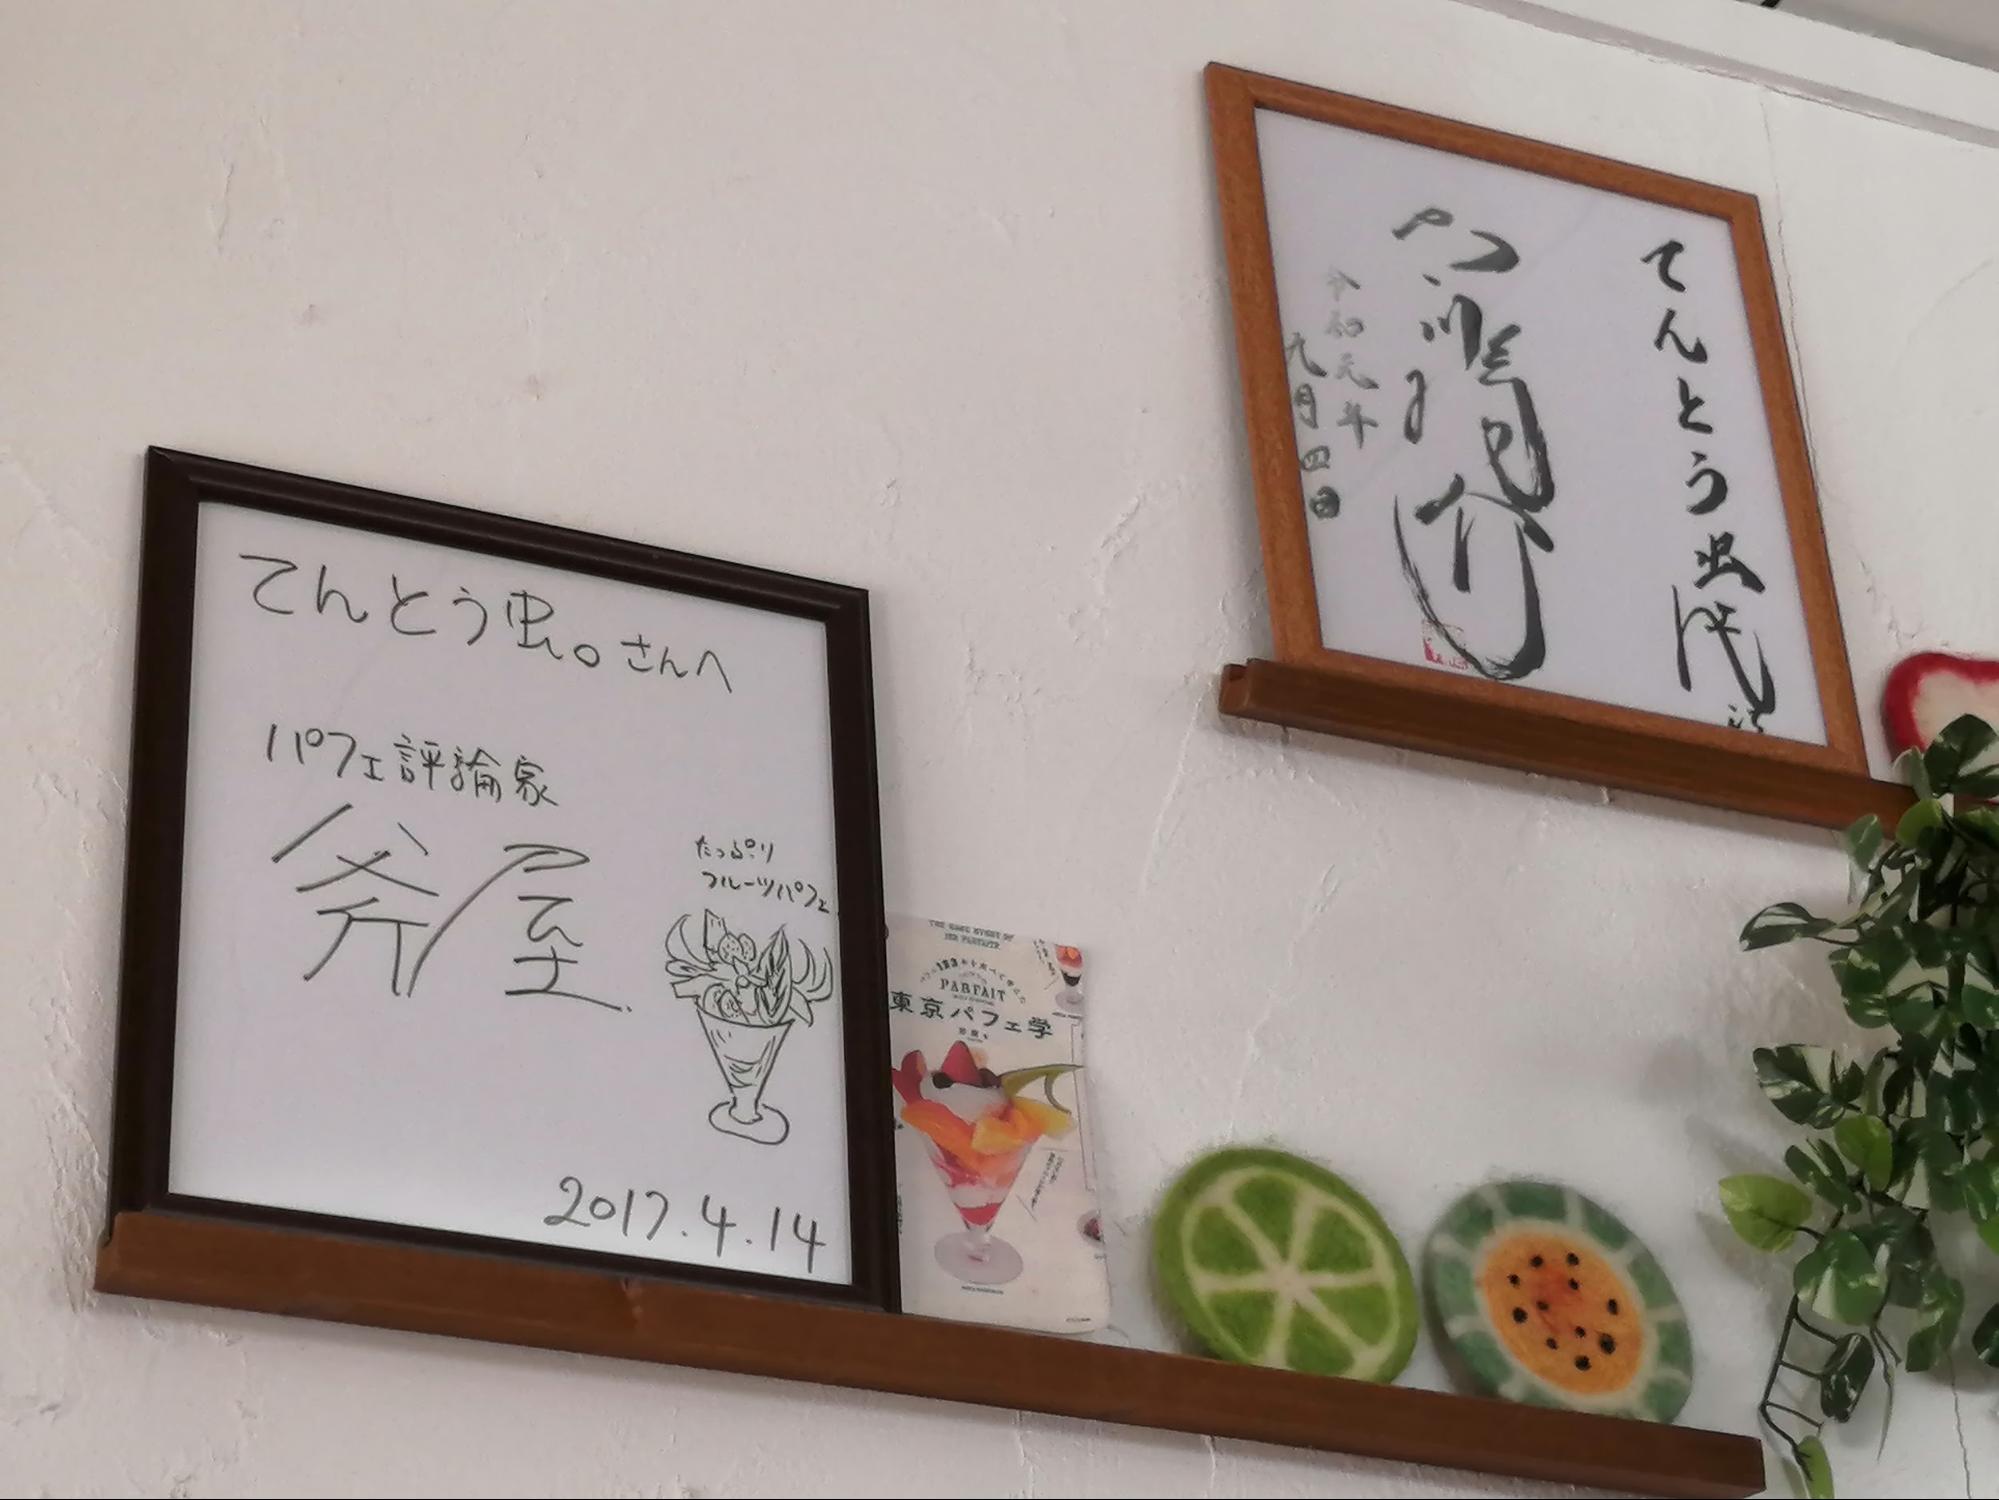 大宮 完全予約制のパフェ専門のカフェてんとう虫 埼玉で探そう